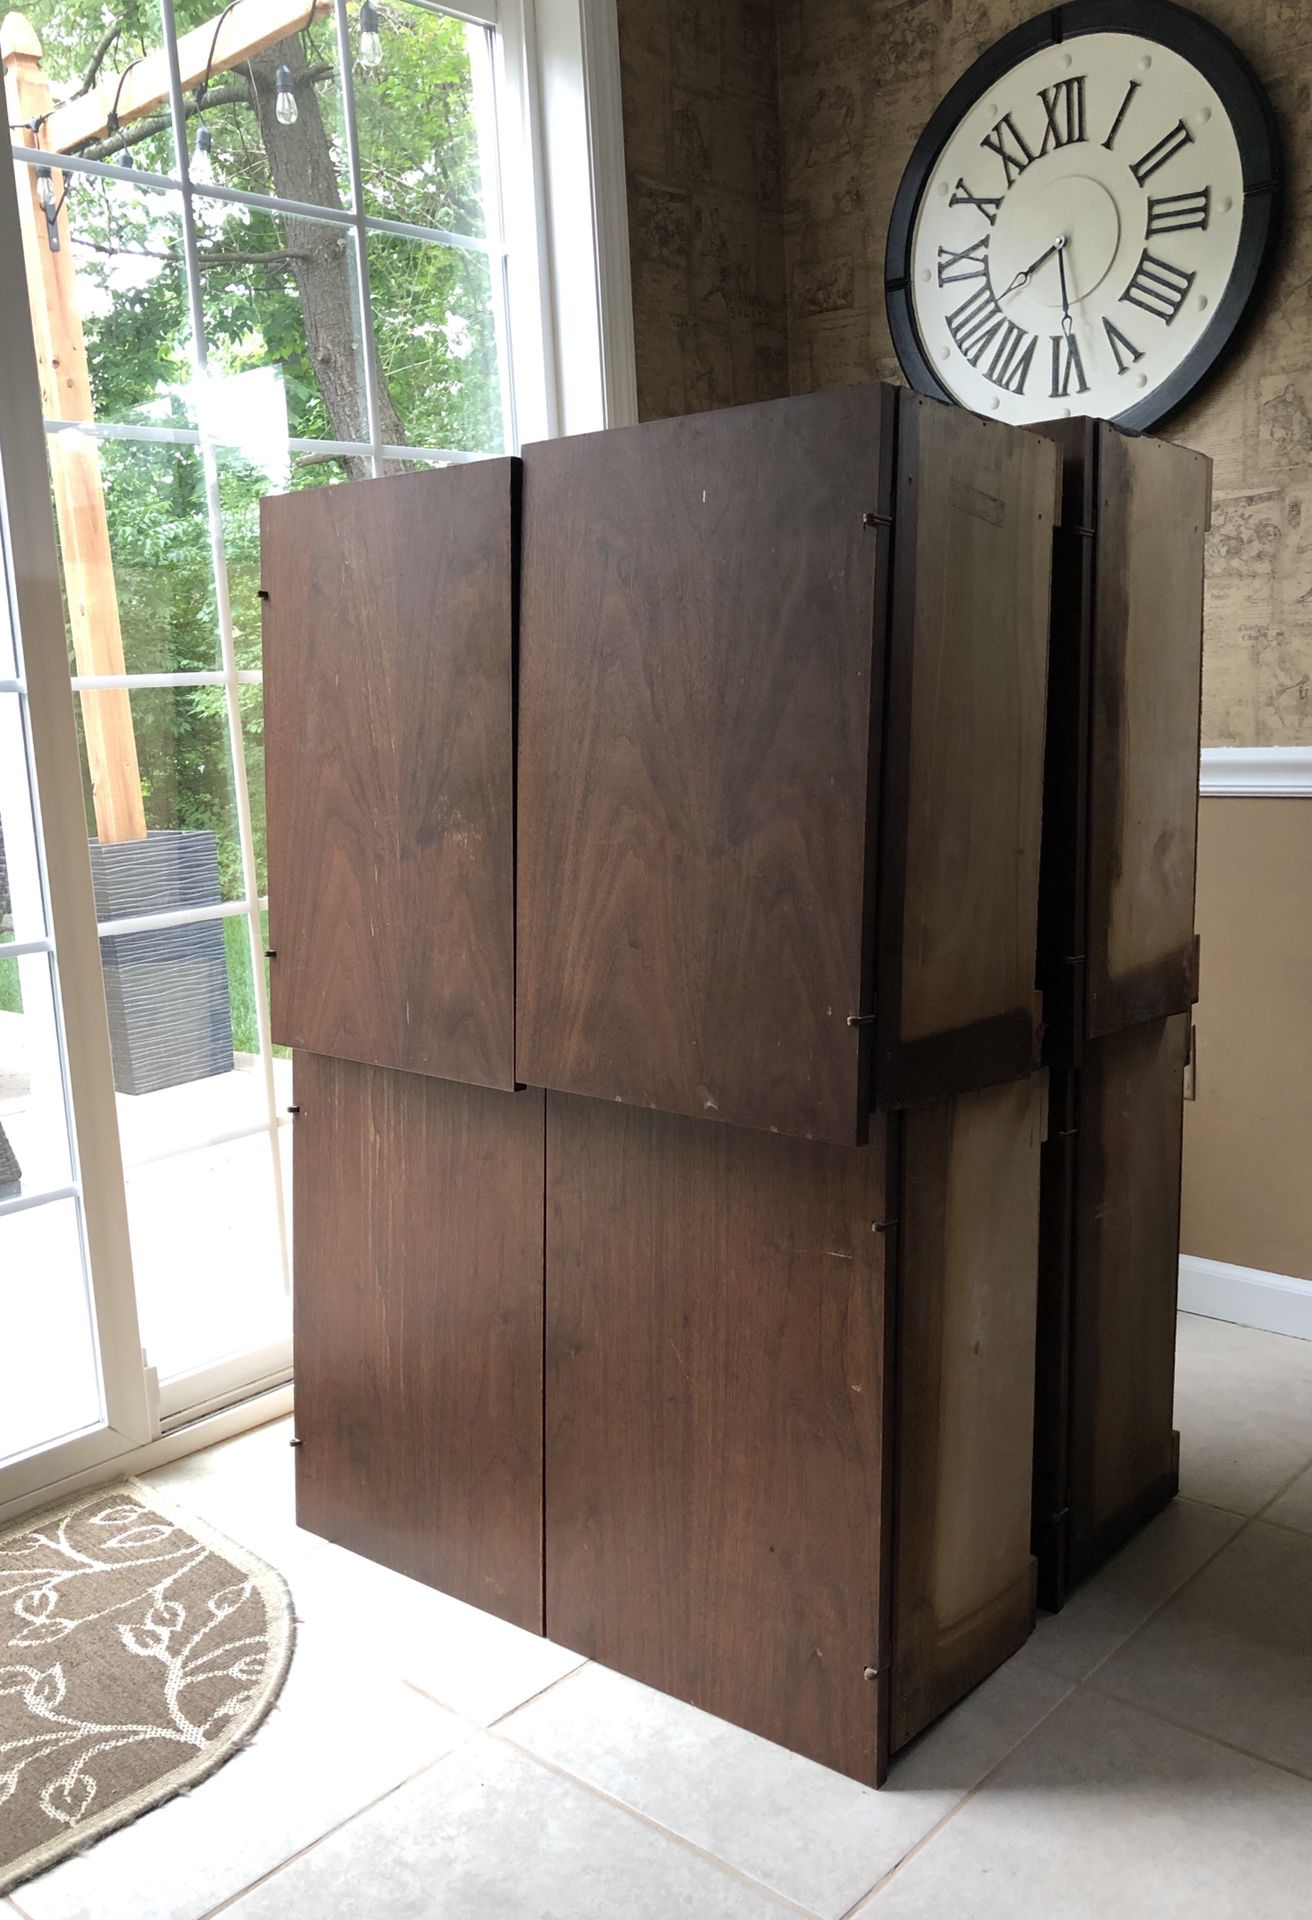 Wood Cabinets (4 sets, 32”)